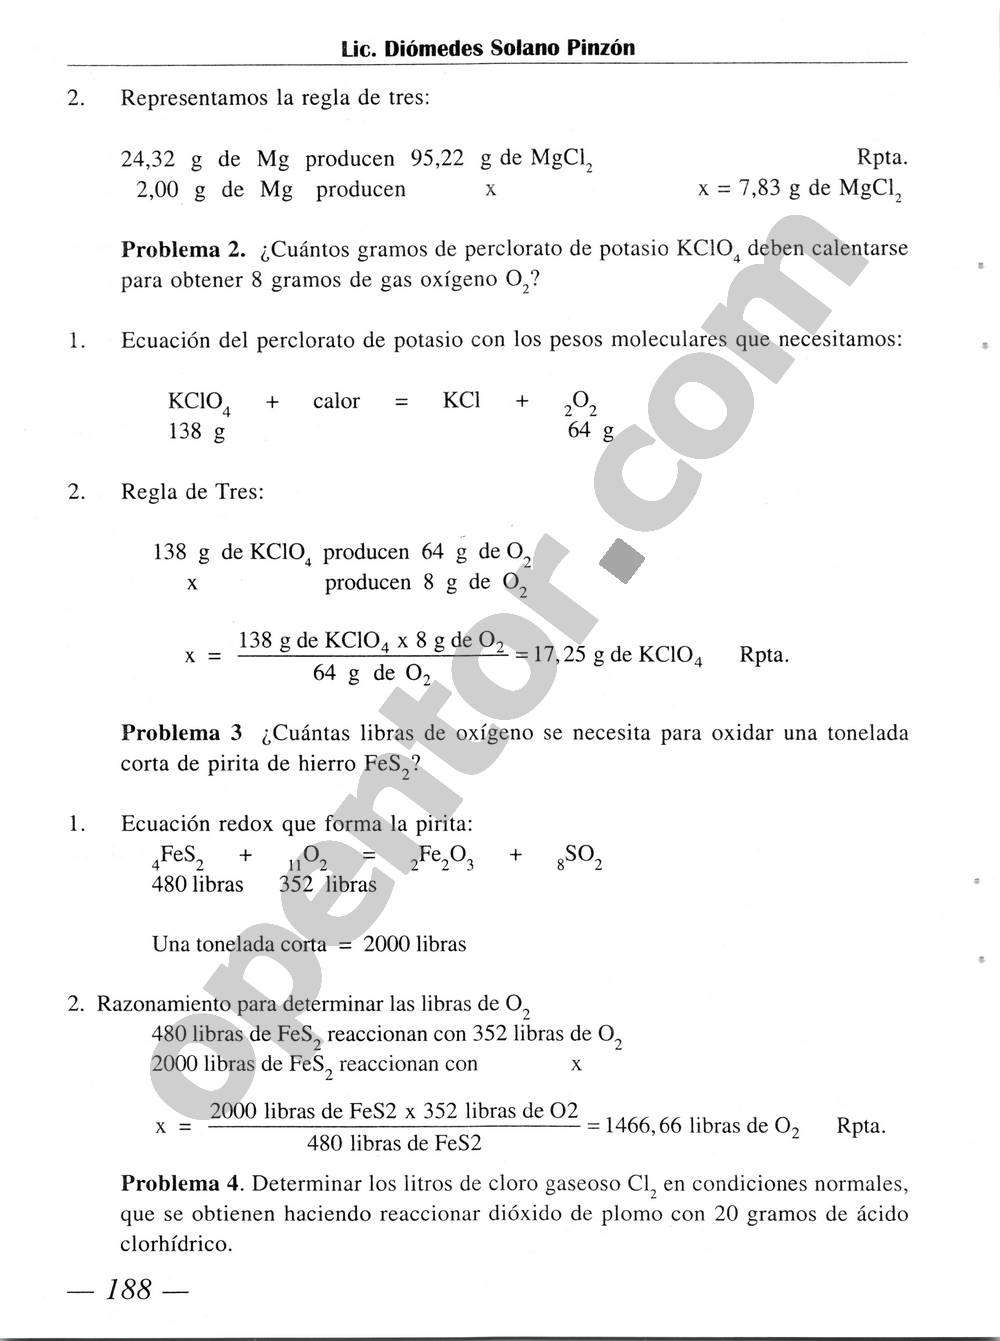 Química Simplificada de Diómedes Solano - Página 188